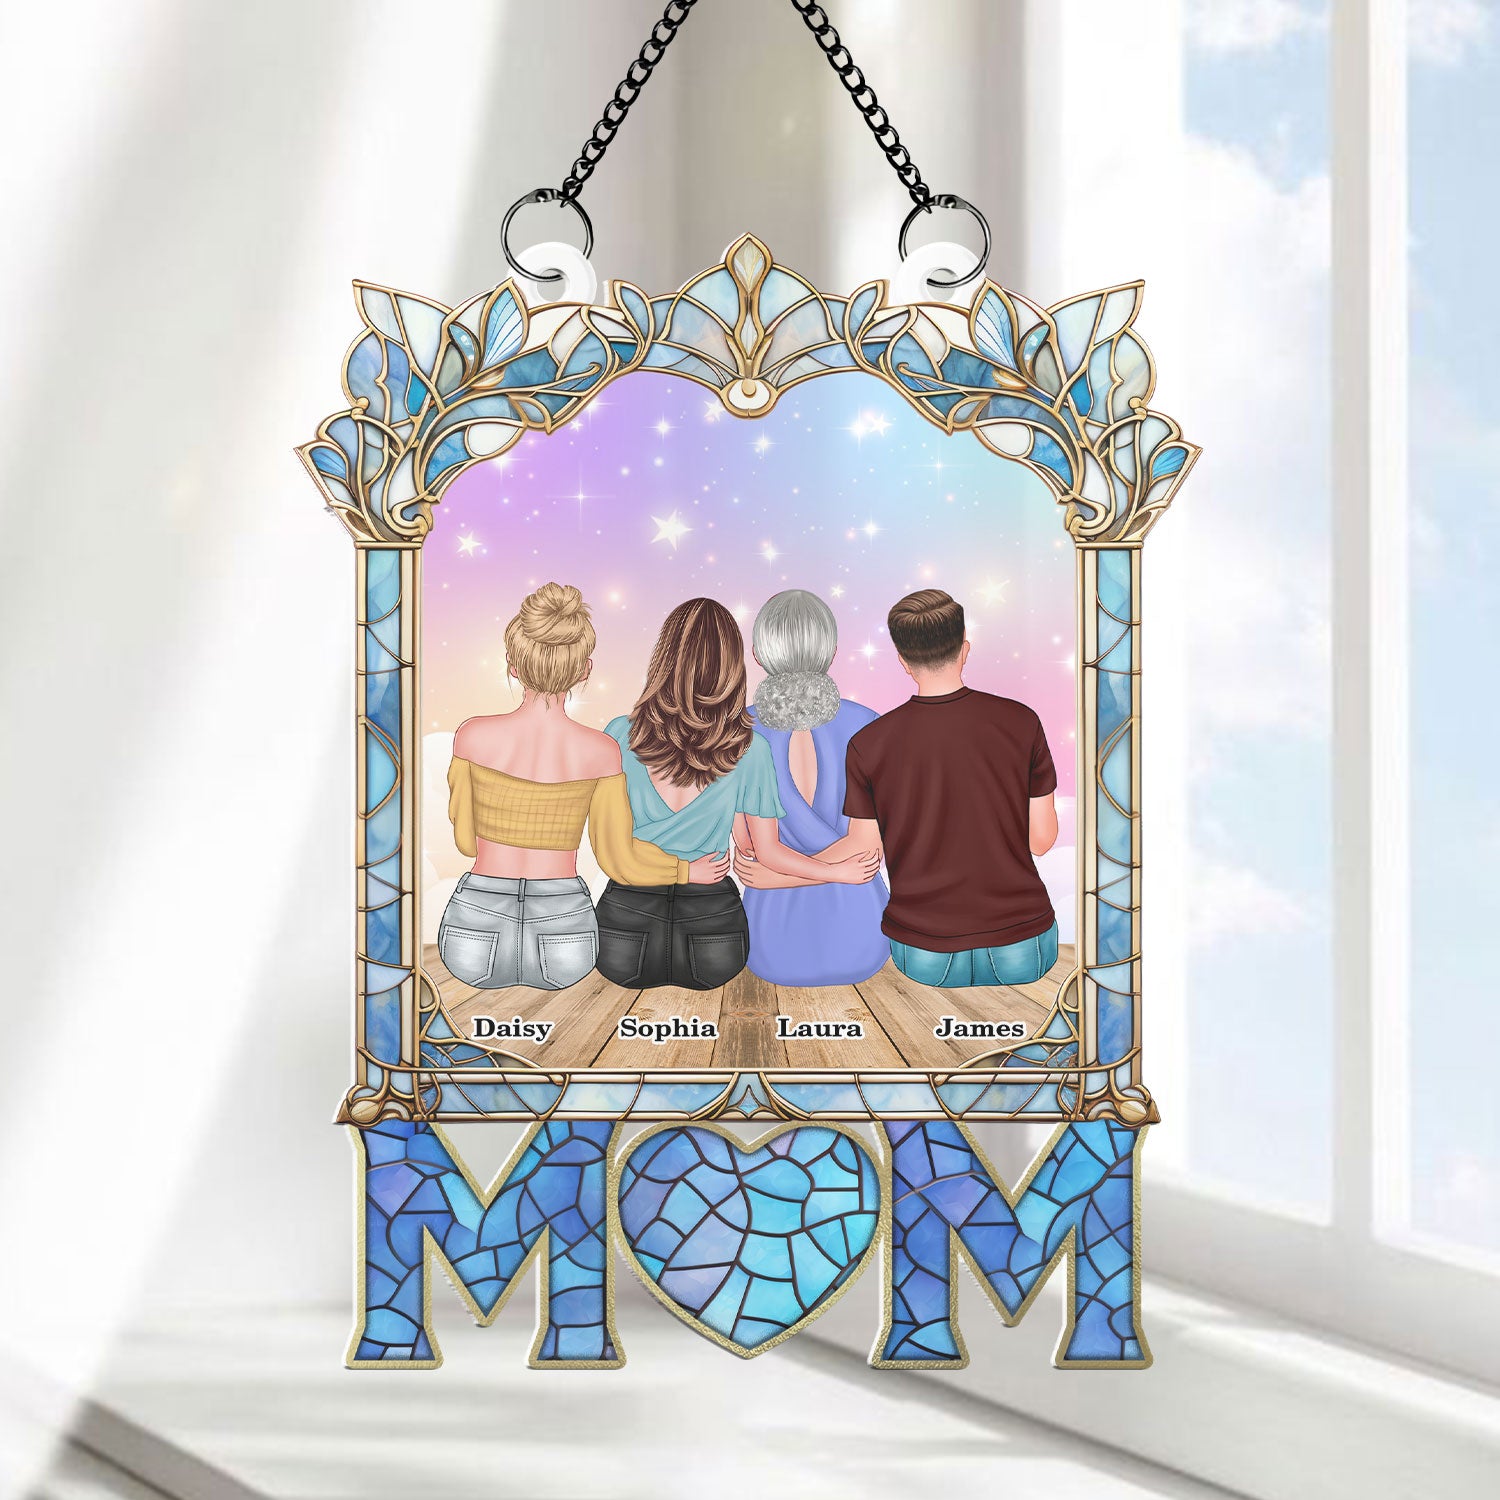 Mom I Love You Hanging Acrylic - Hanging Door Acrylic - Personalized Custom Shape Window Hanging Acrylic